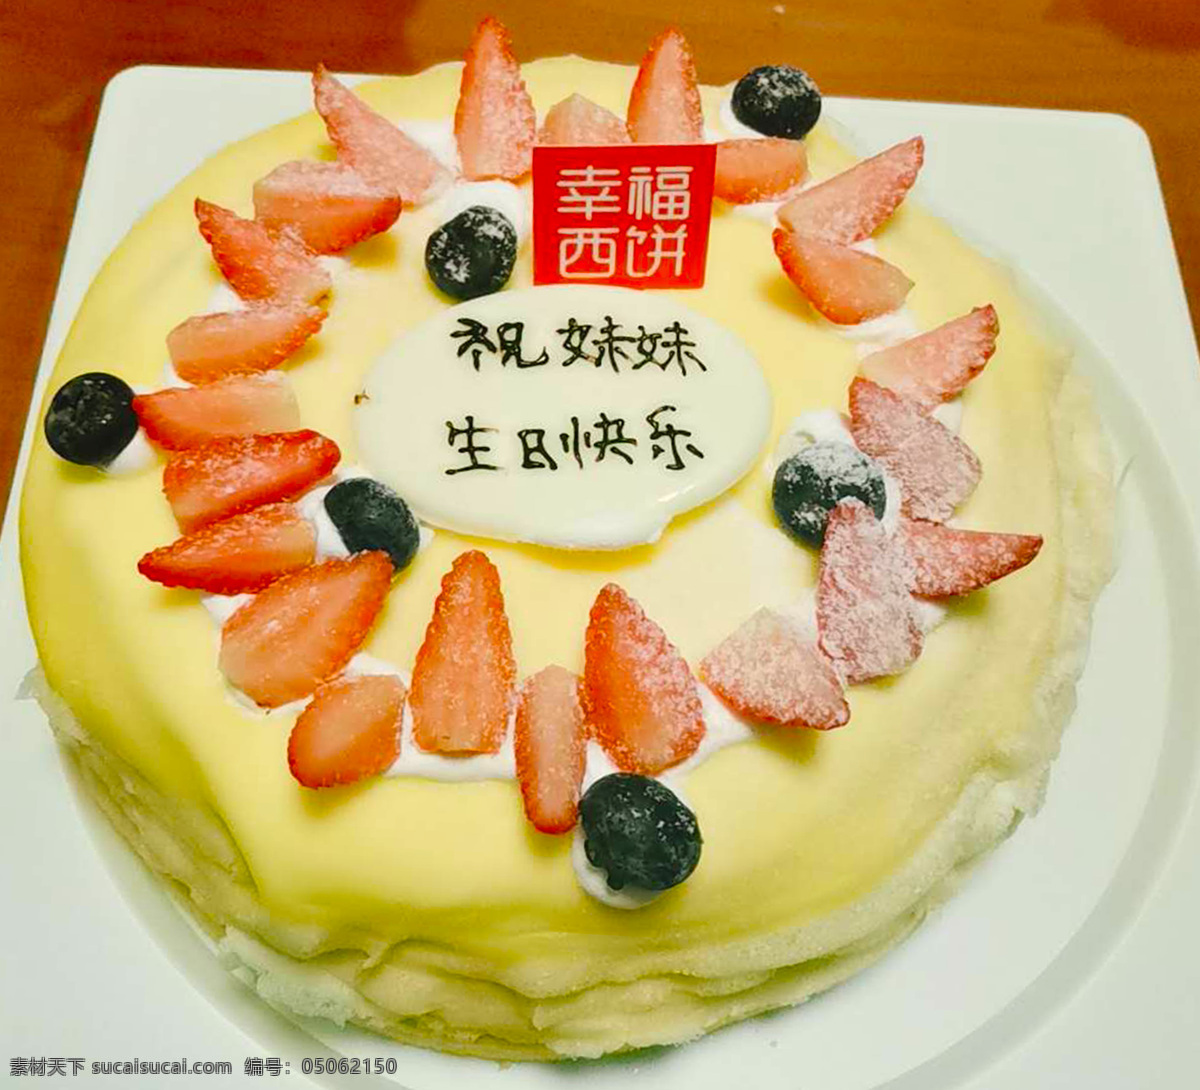 生日蛋糕图片 草莓蛋糕 蛋糕 榴莲草莓蛋糕 榴莲蛋糕 甜品 餐饮美食 西餐美食